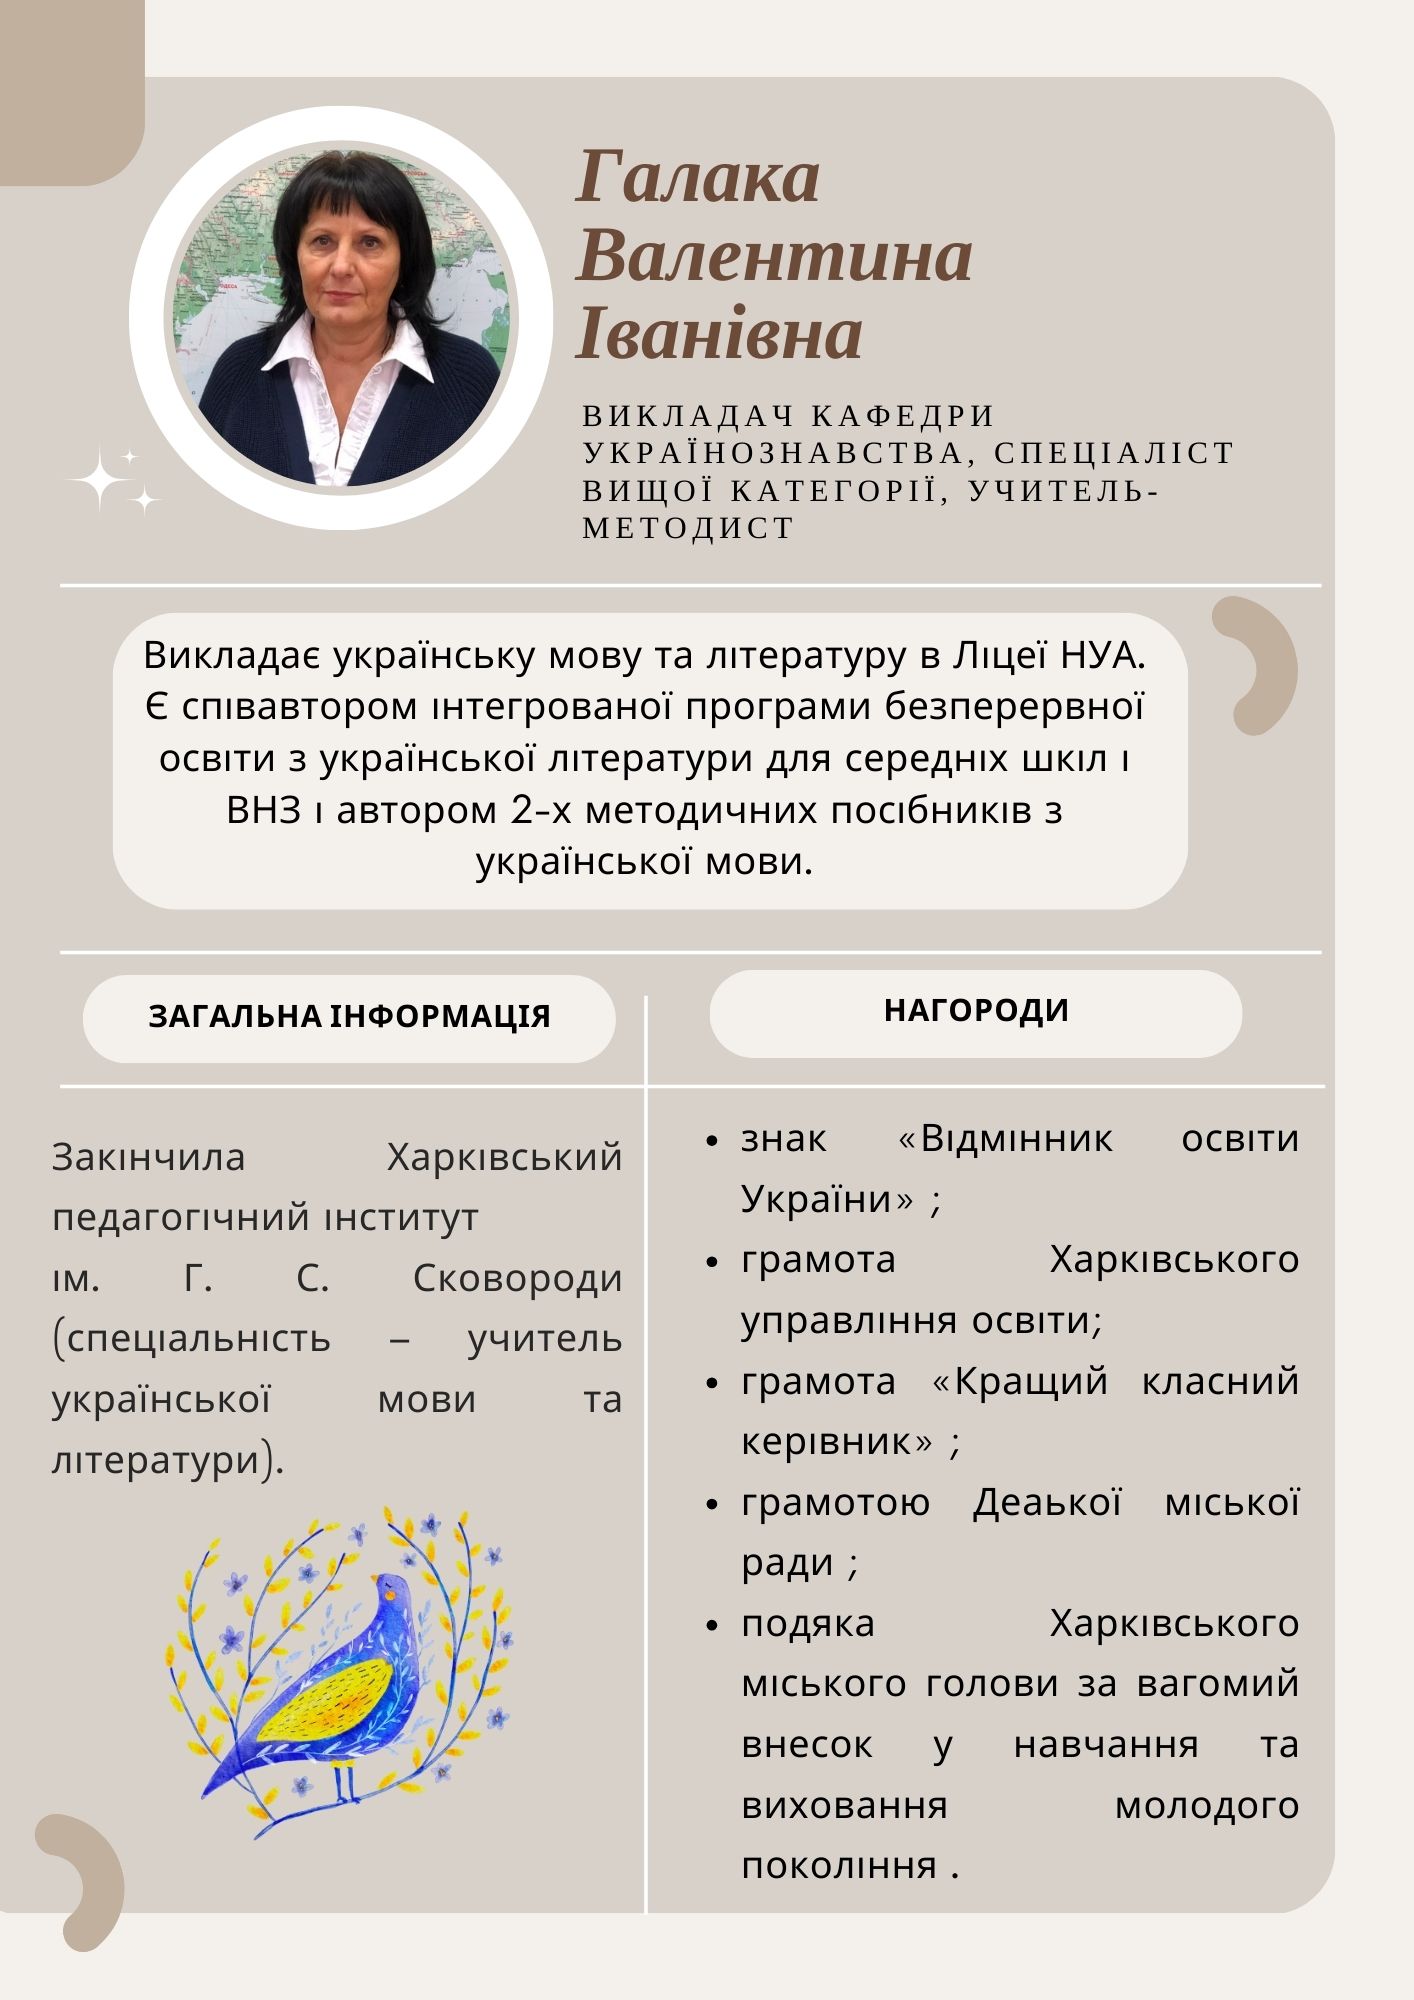 Галака Валентина Іванівна, викладач кафедри українознавства, спеціаліст вищої категорії, учитель-методист